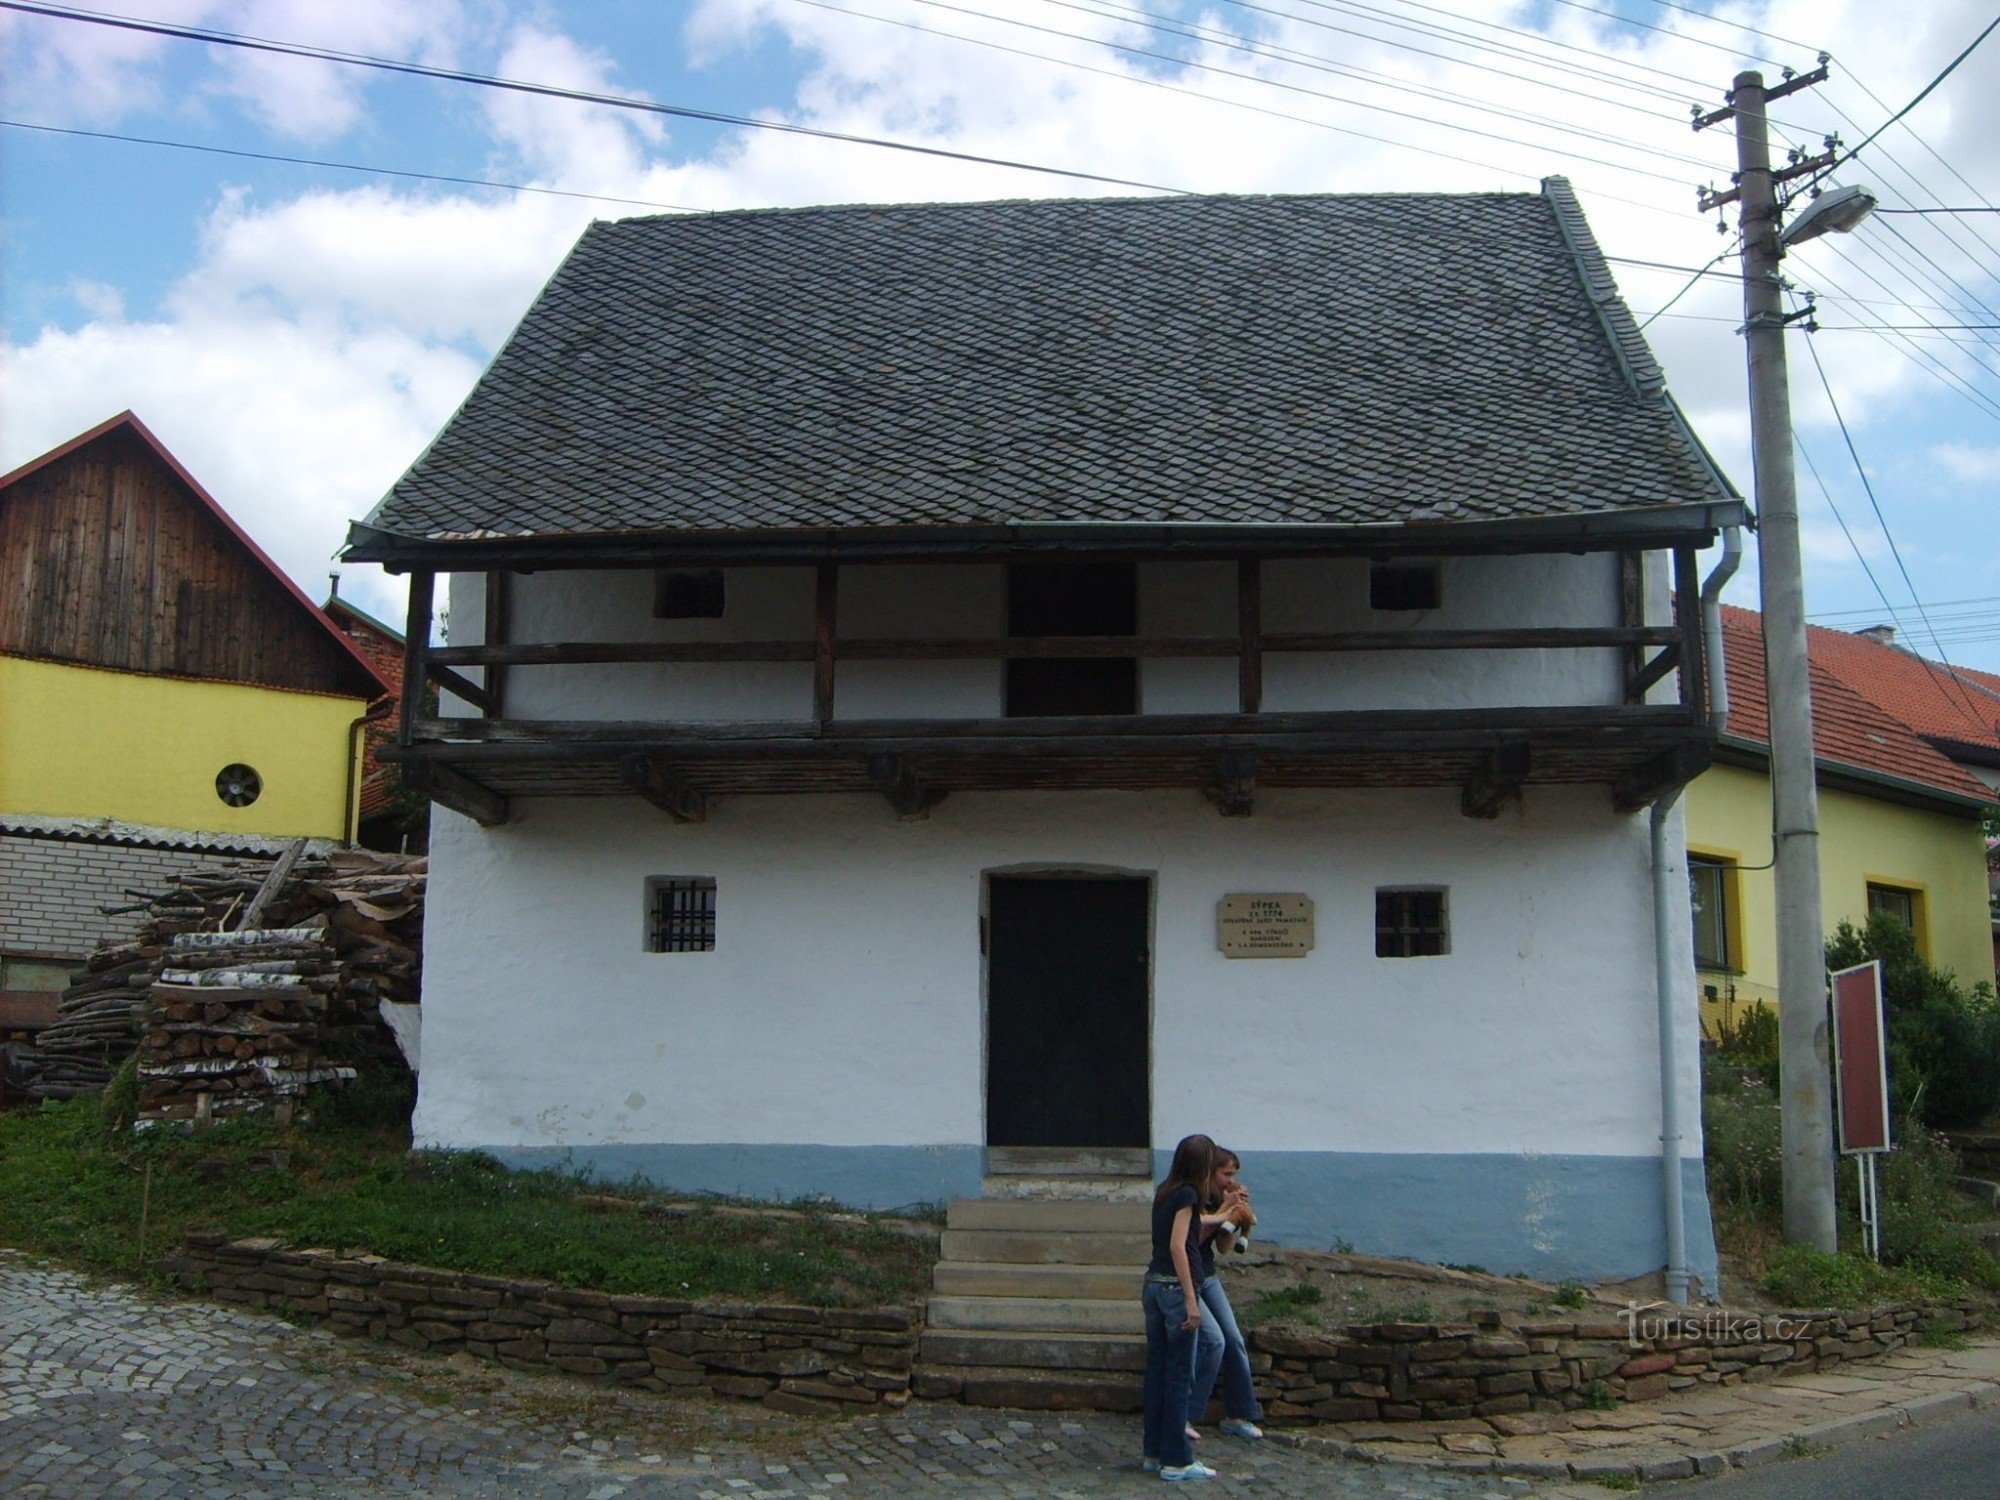 Sýpka - expositie van JA Comenius en de geschiedenis van het dorp